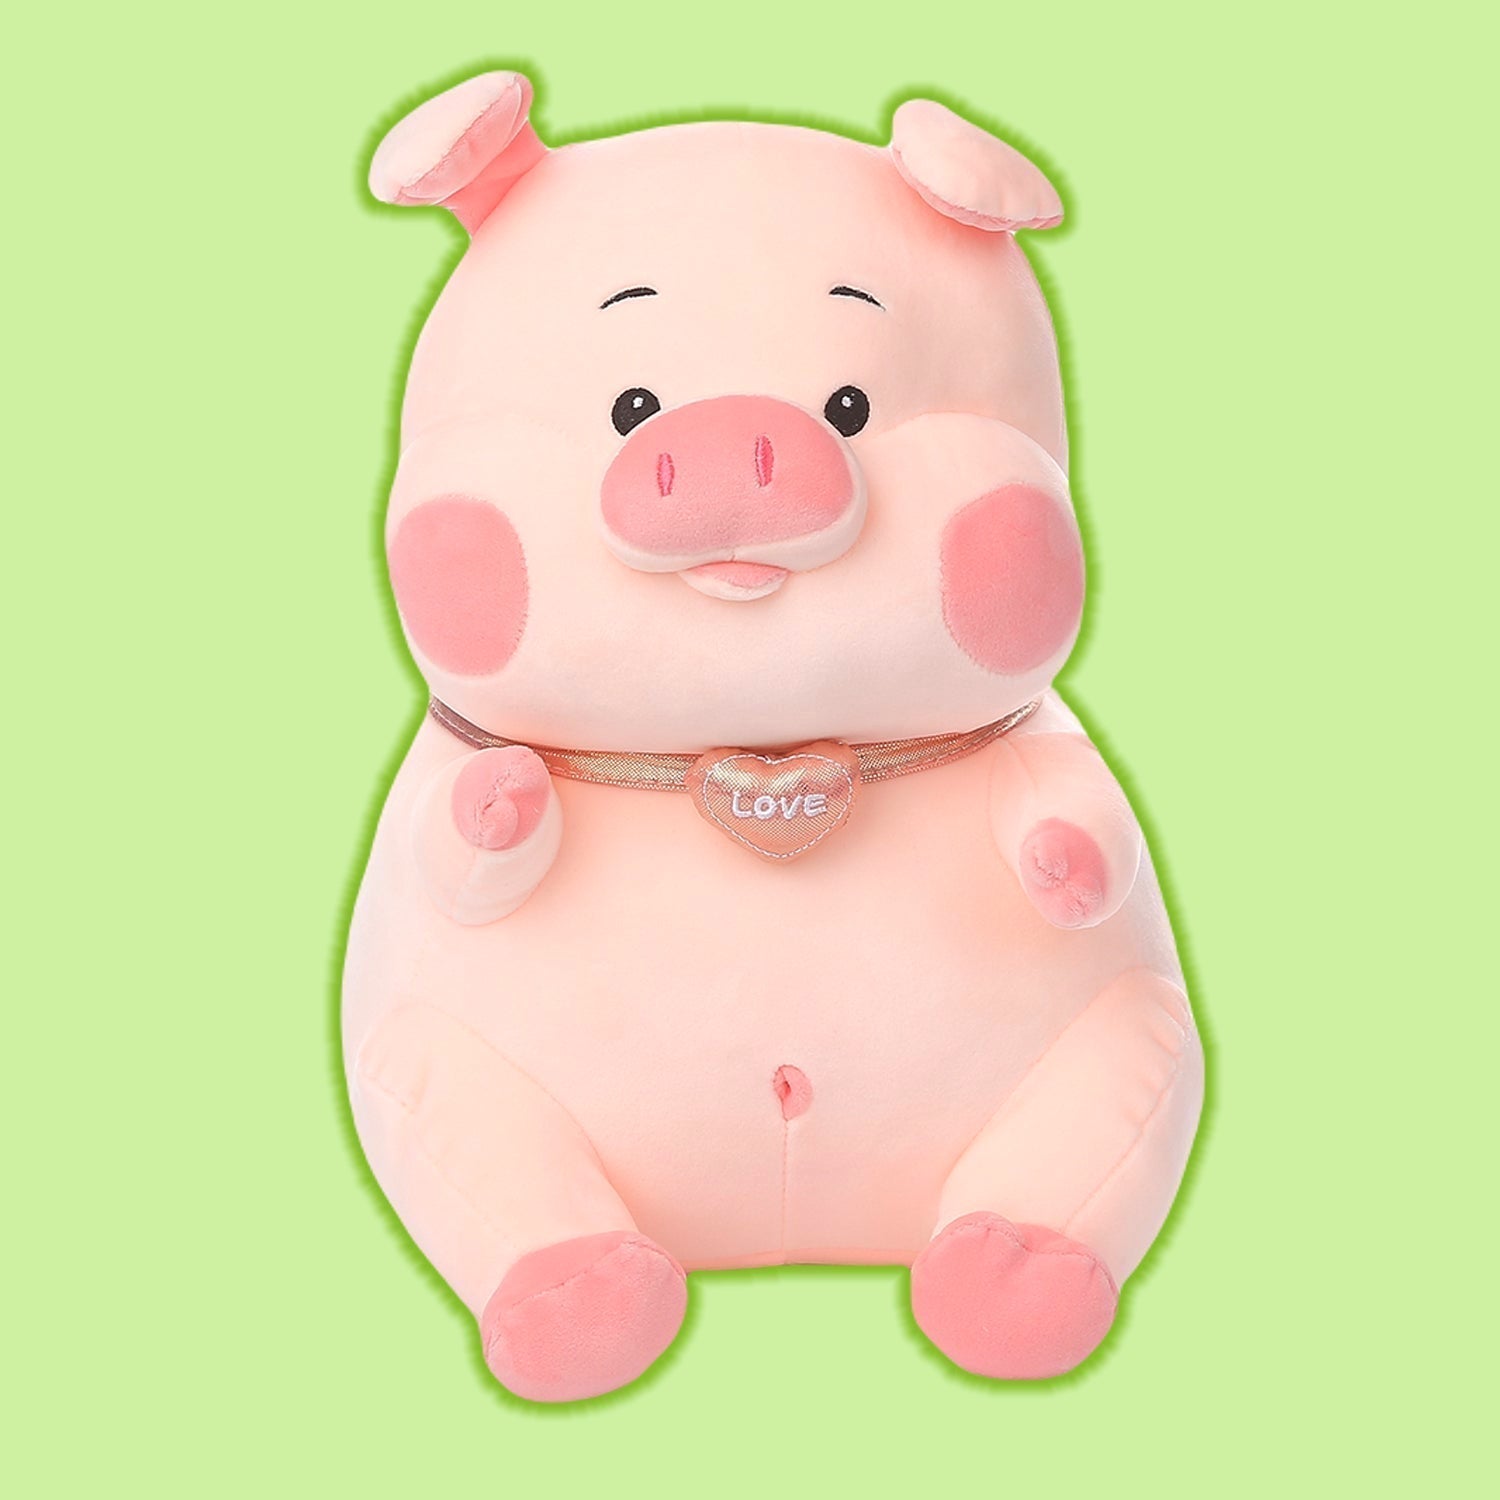 Jumbo Pink Pig Plush Toy